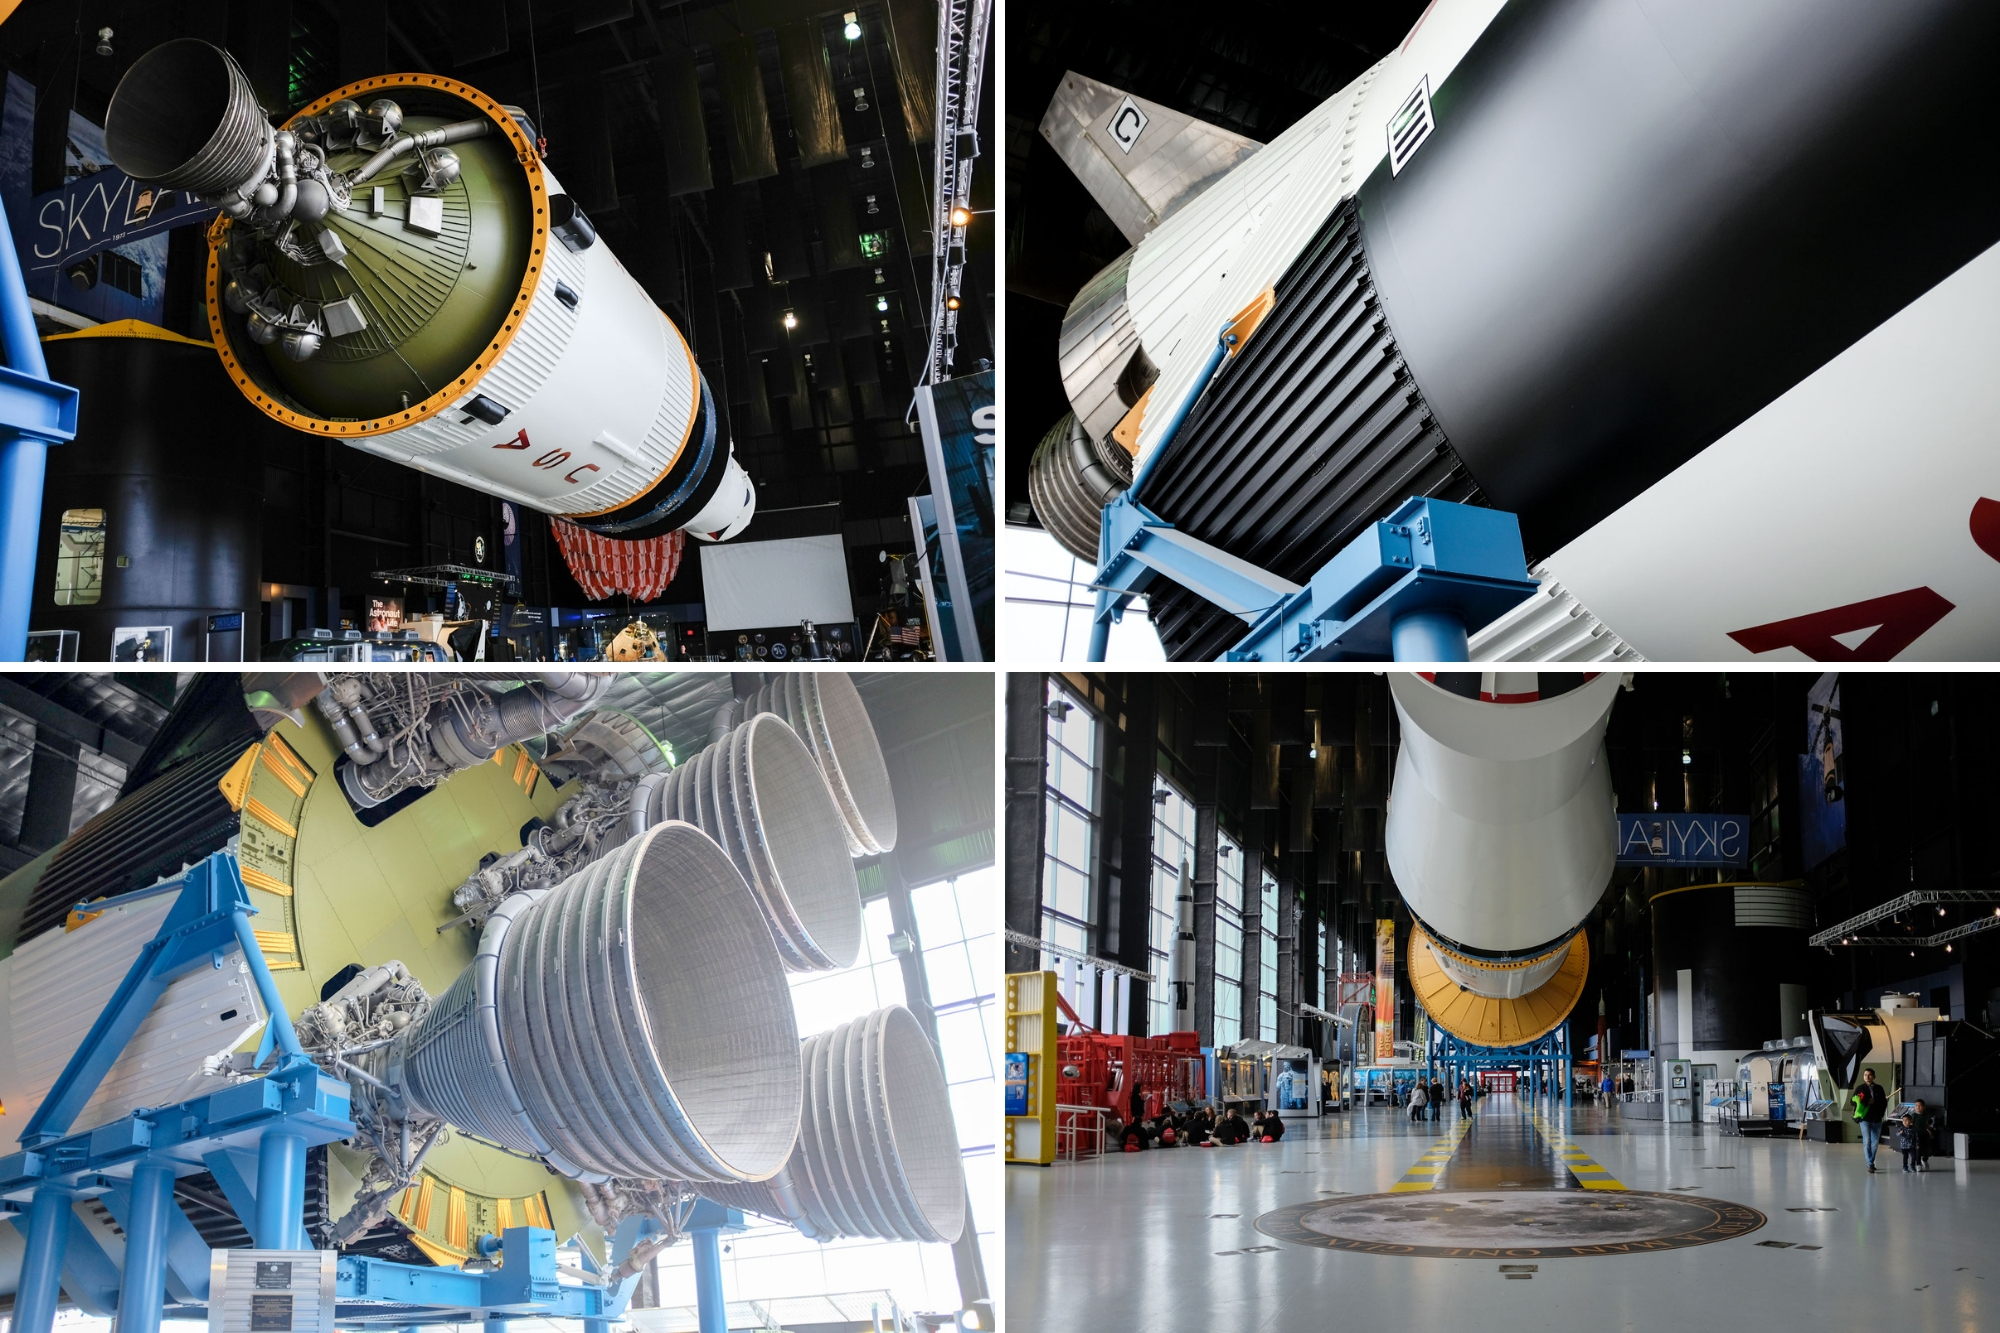 Saturn V Model collage at the U.S. Space & Rocket Center